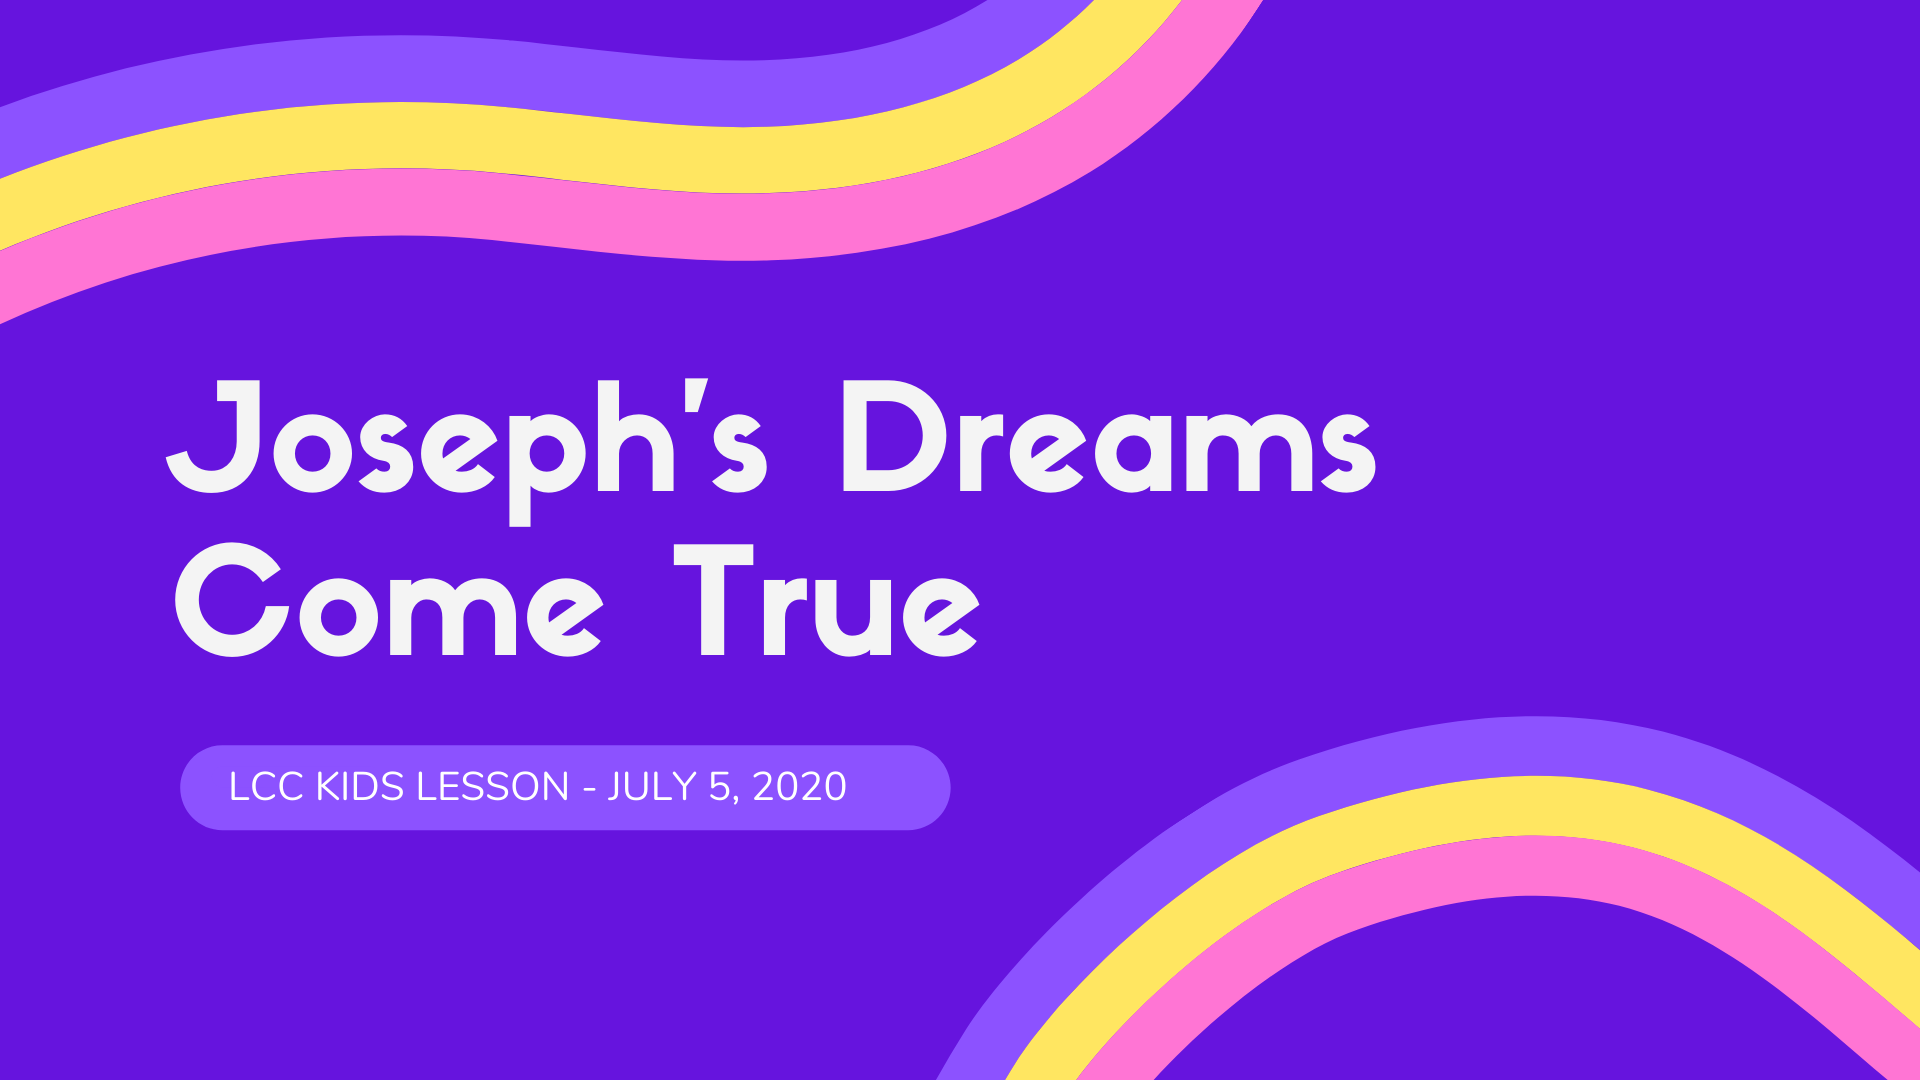 Joseph's Dreams Come True